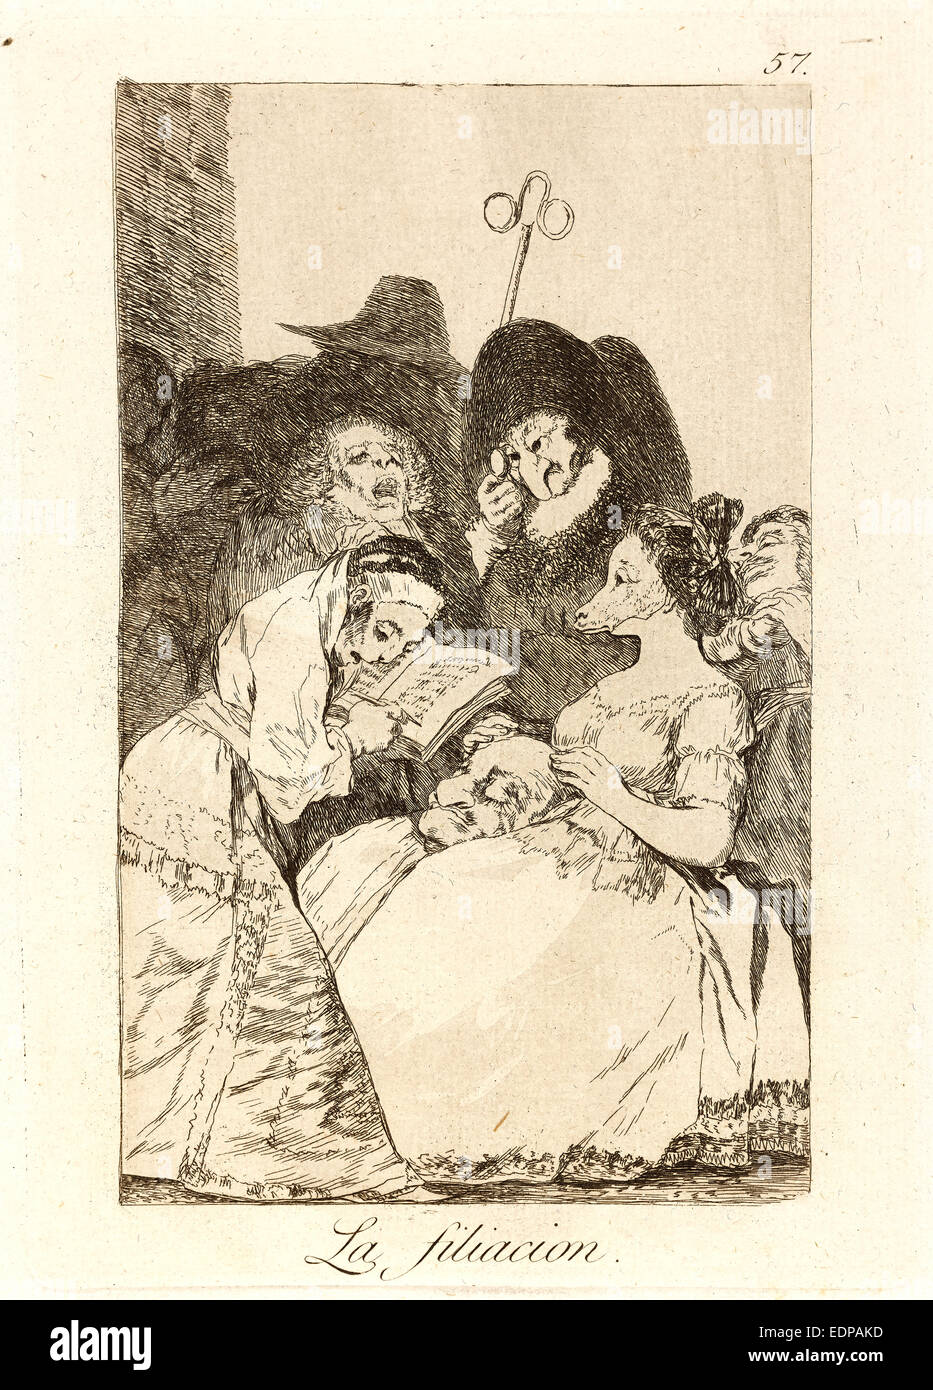 Francisco de Goya (Spanisch, 1746-1828). La Filiacion. (Die Abstammung), 1796-1797. Von Los Caprichos, Nr. 57. Radierung Stockfoto